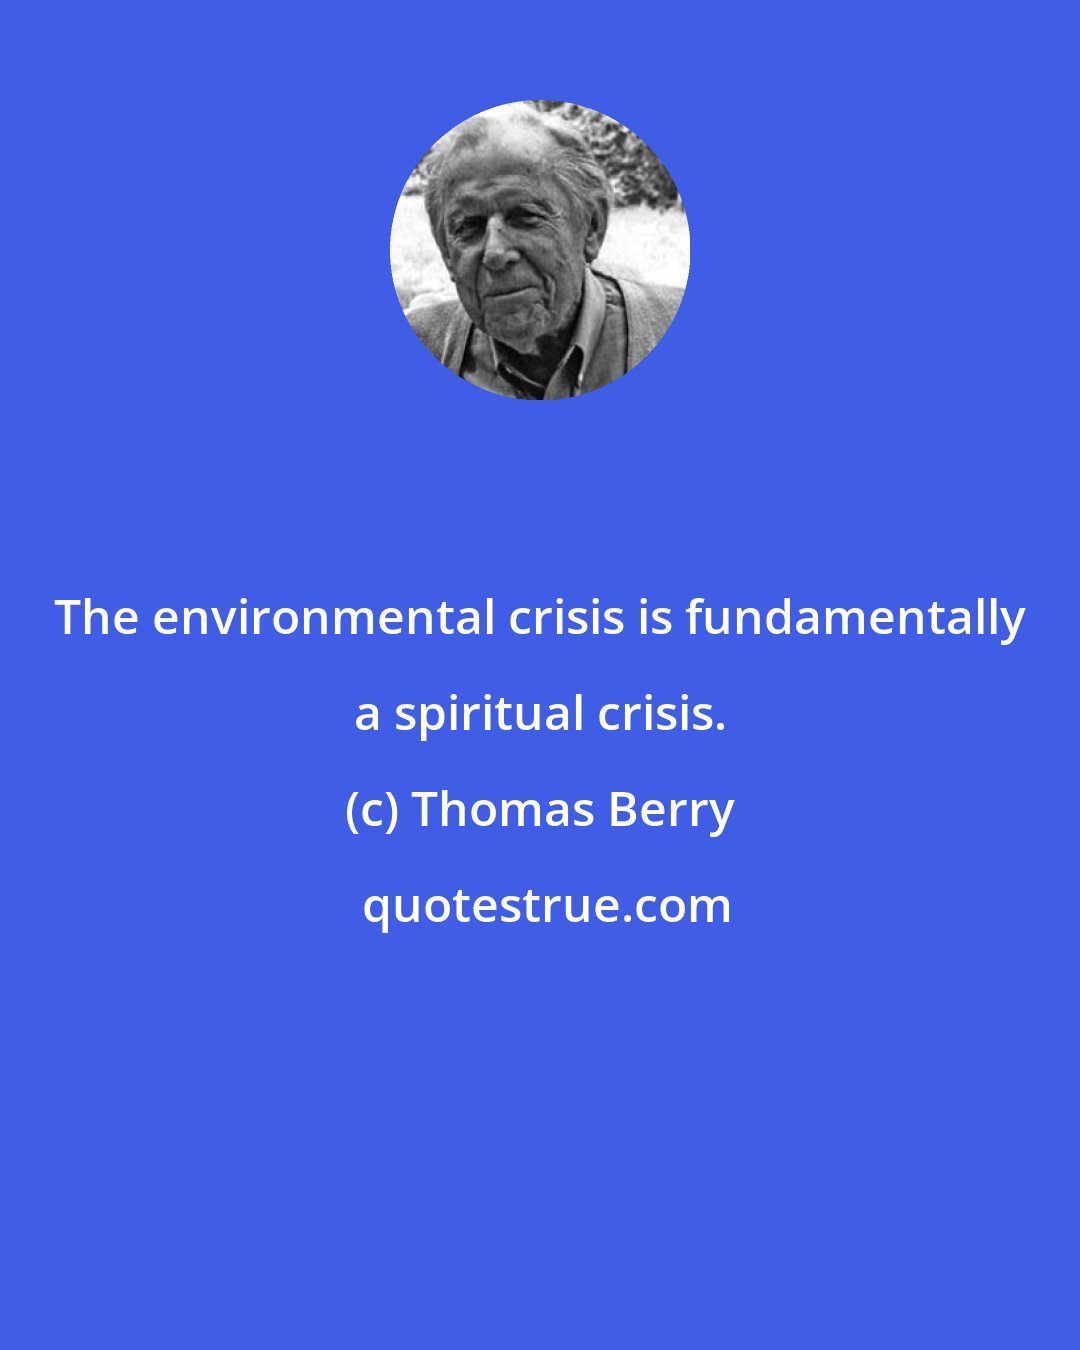 Thomas Berry: The environmental crisis is fundamentally a spiritual crisis.